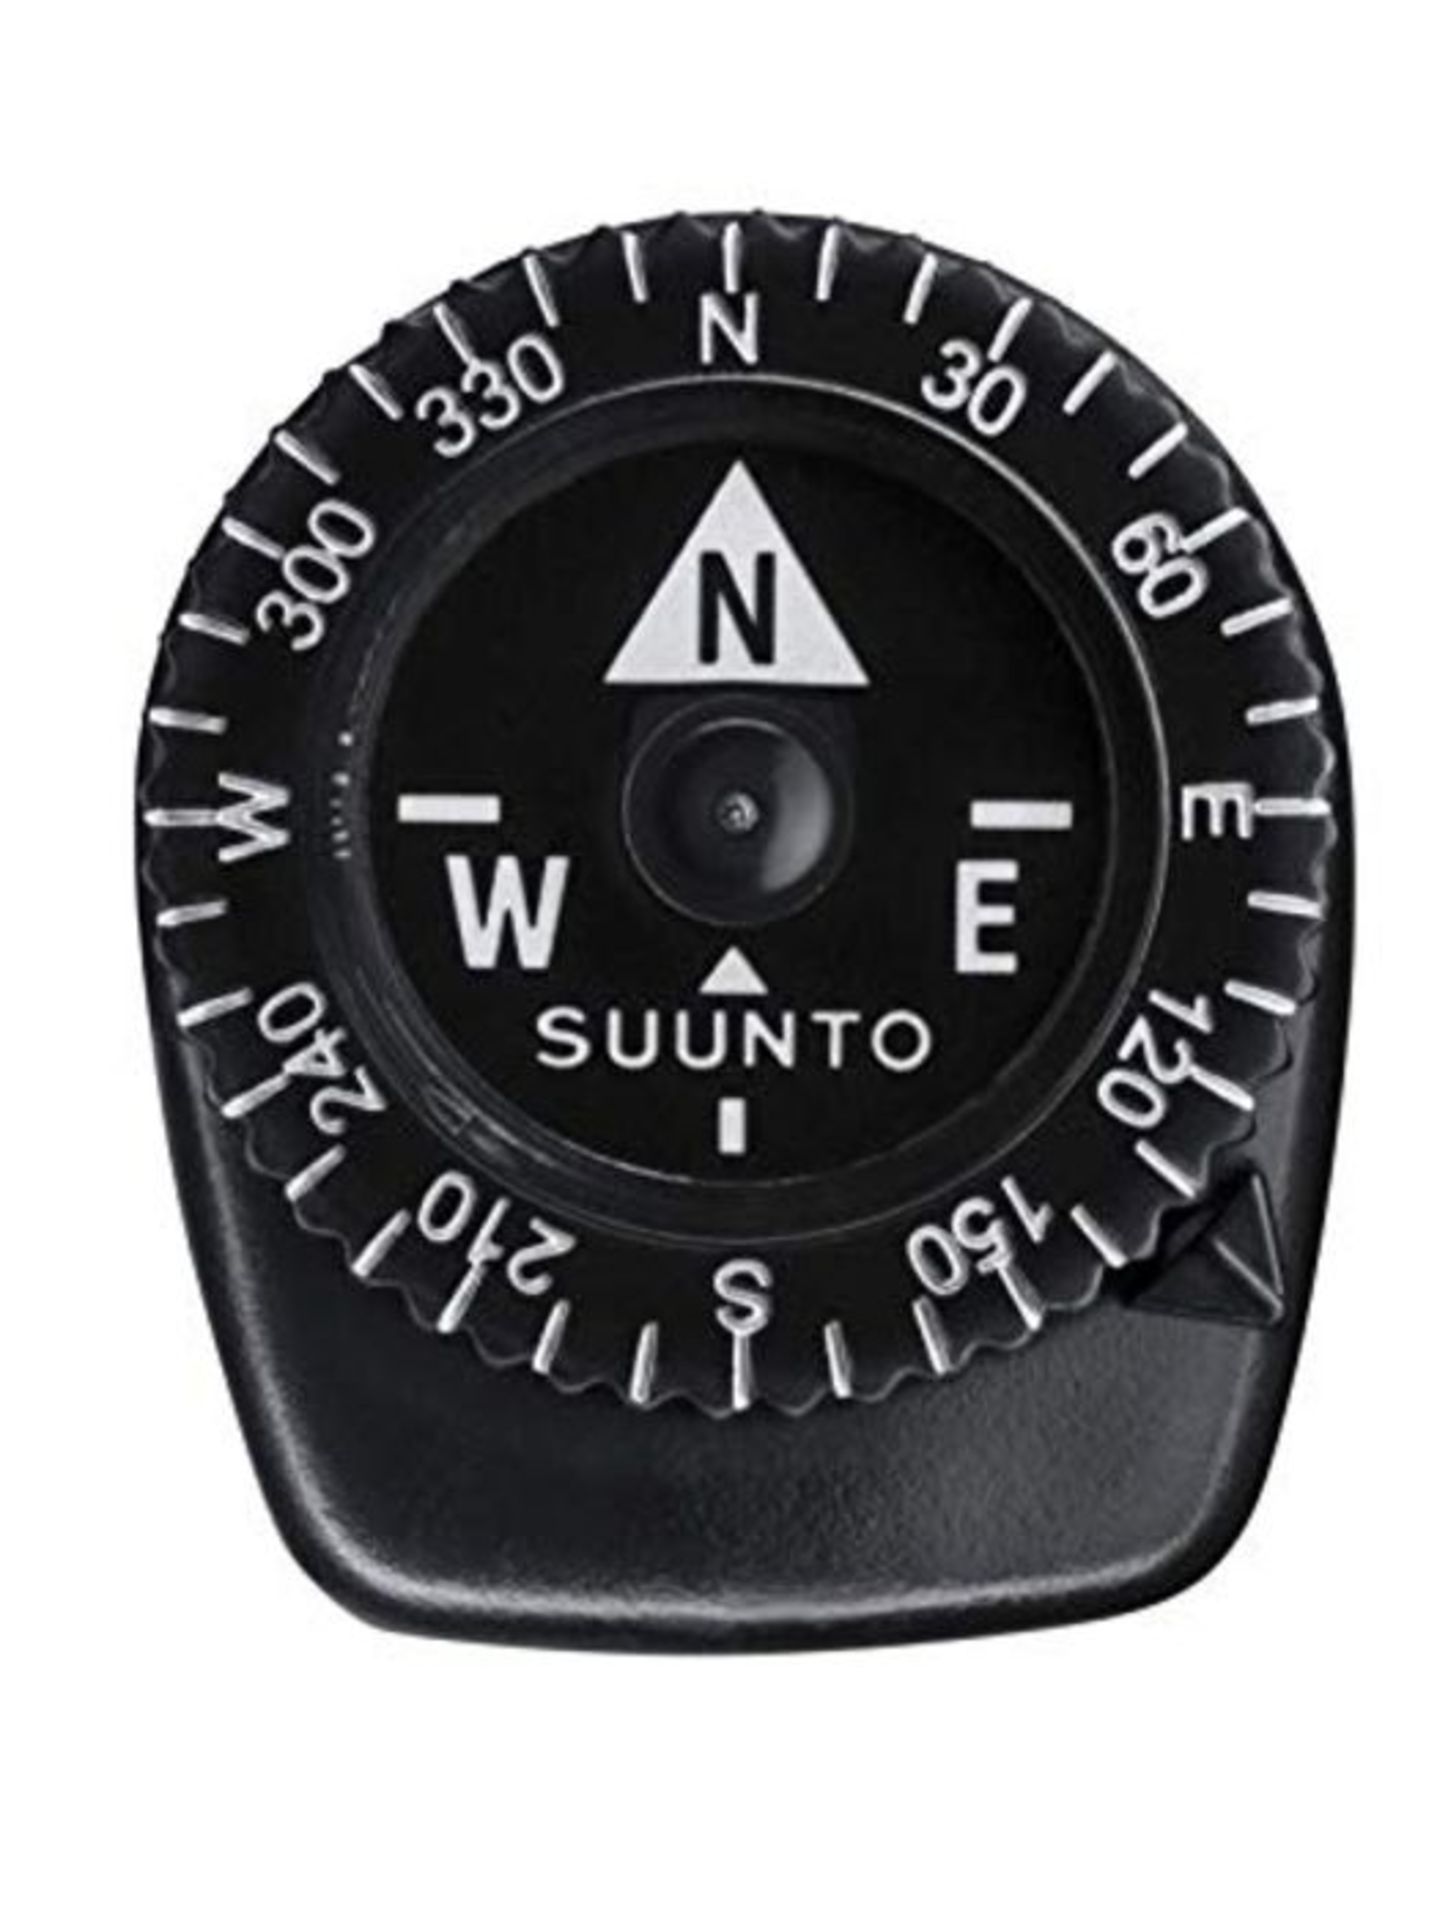 SUUNTO Compass Clipper L/B NH, Northern Hemisphere, SS004102011 standard size Black